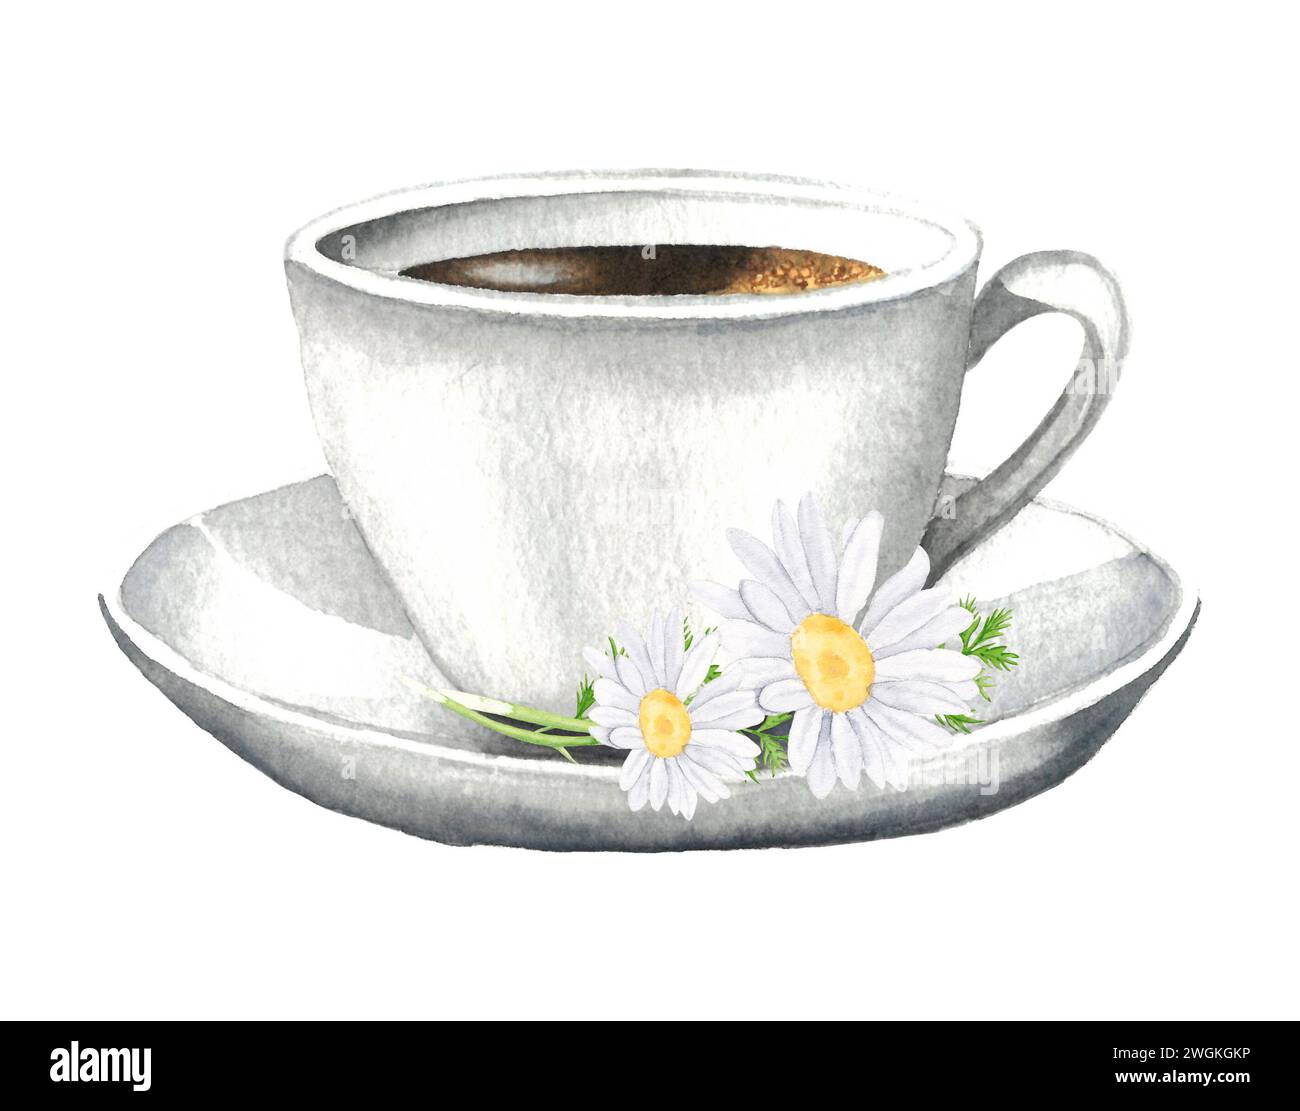 Illustration aquarelle dessinée à la main de la camomille de tasse et de fleurs sur un fond blanc. Tisane à la camomille Banque D'Images